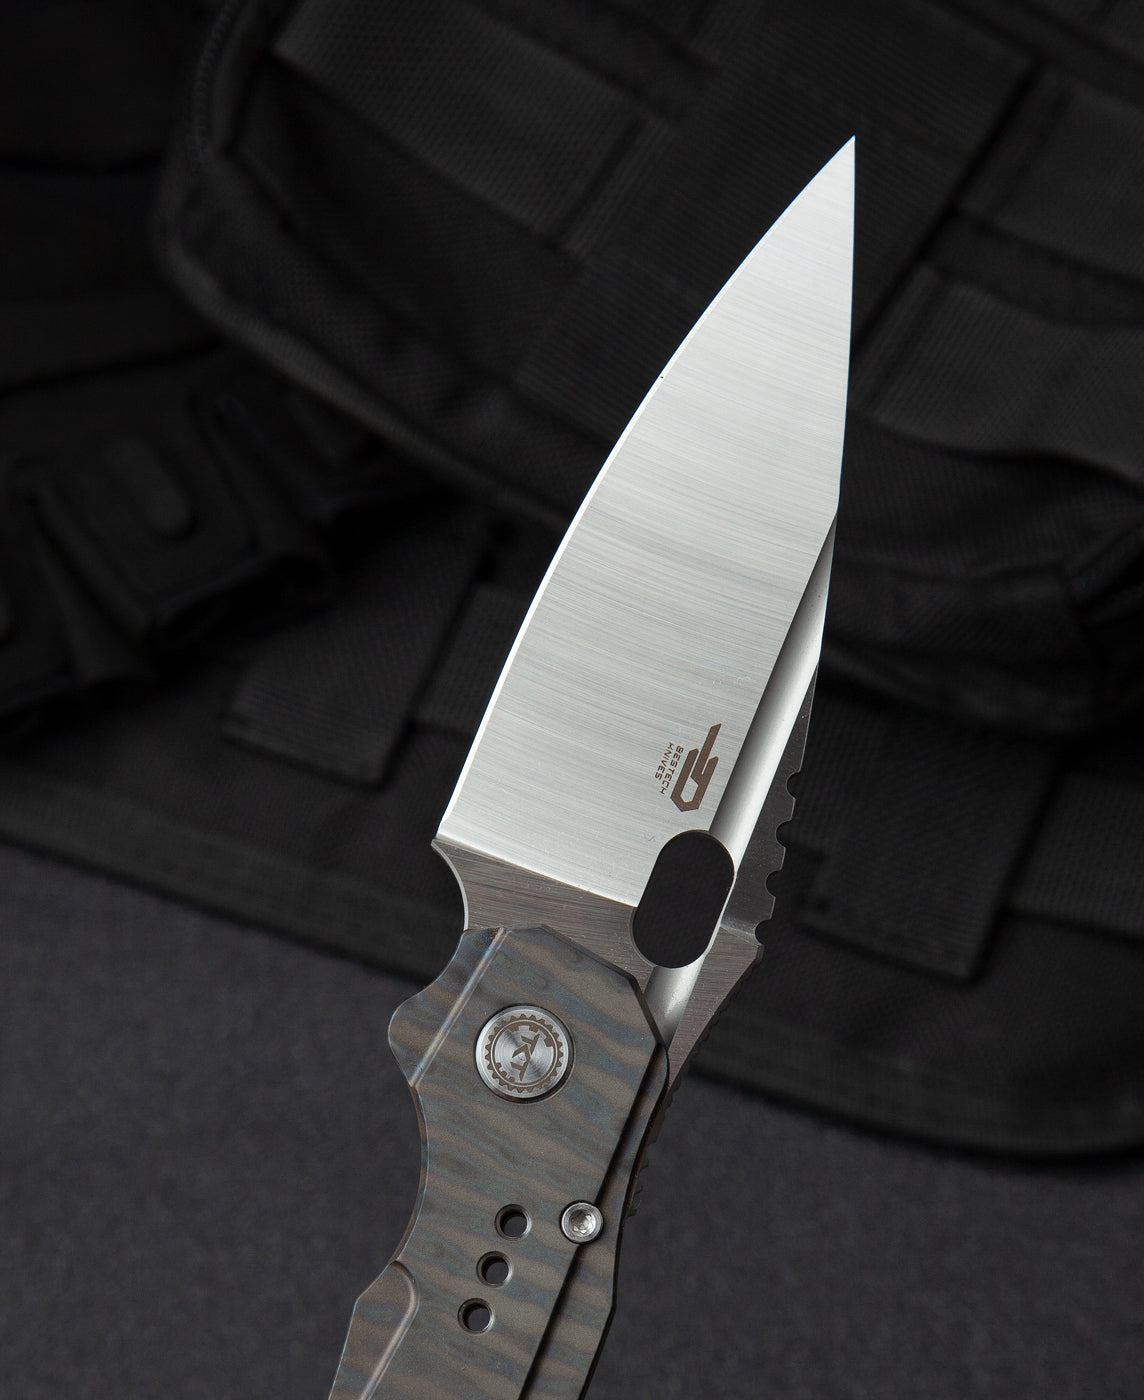 Bestech Knives Exploit S35VN钢 钛合金柄 BT2005D 1780